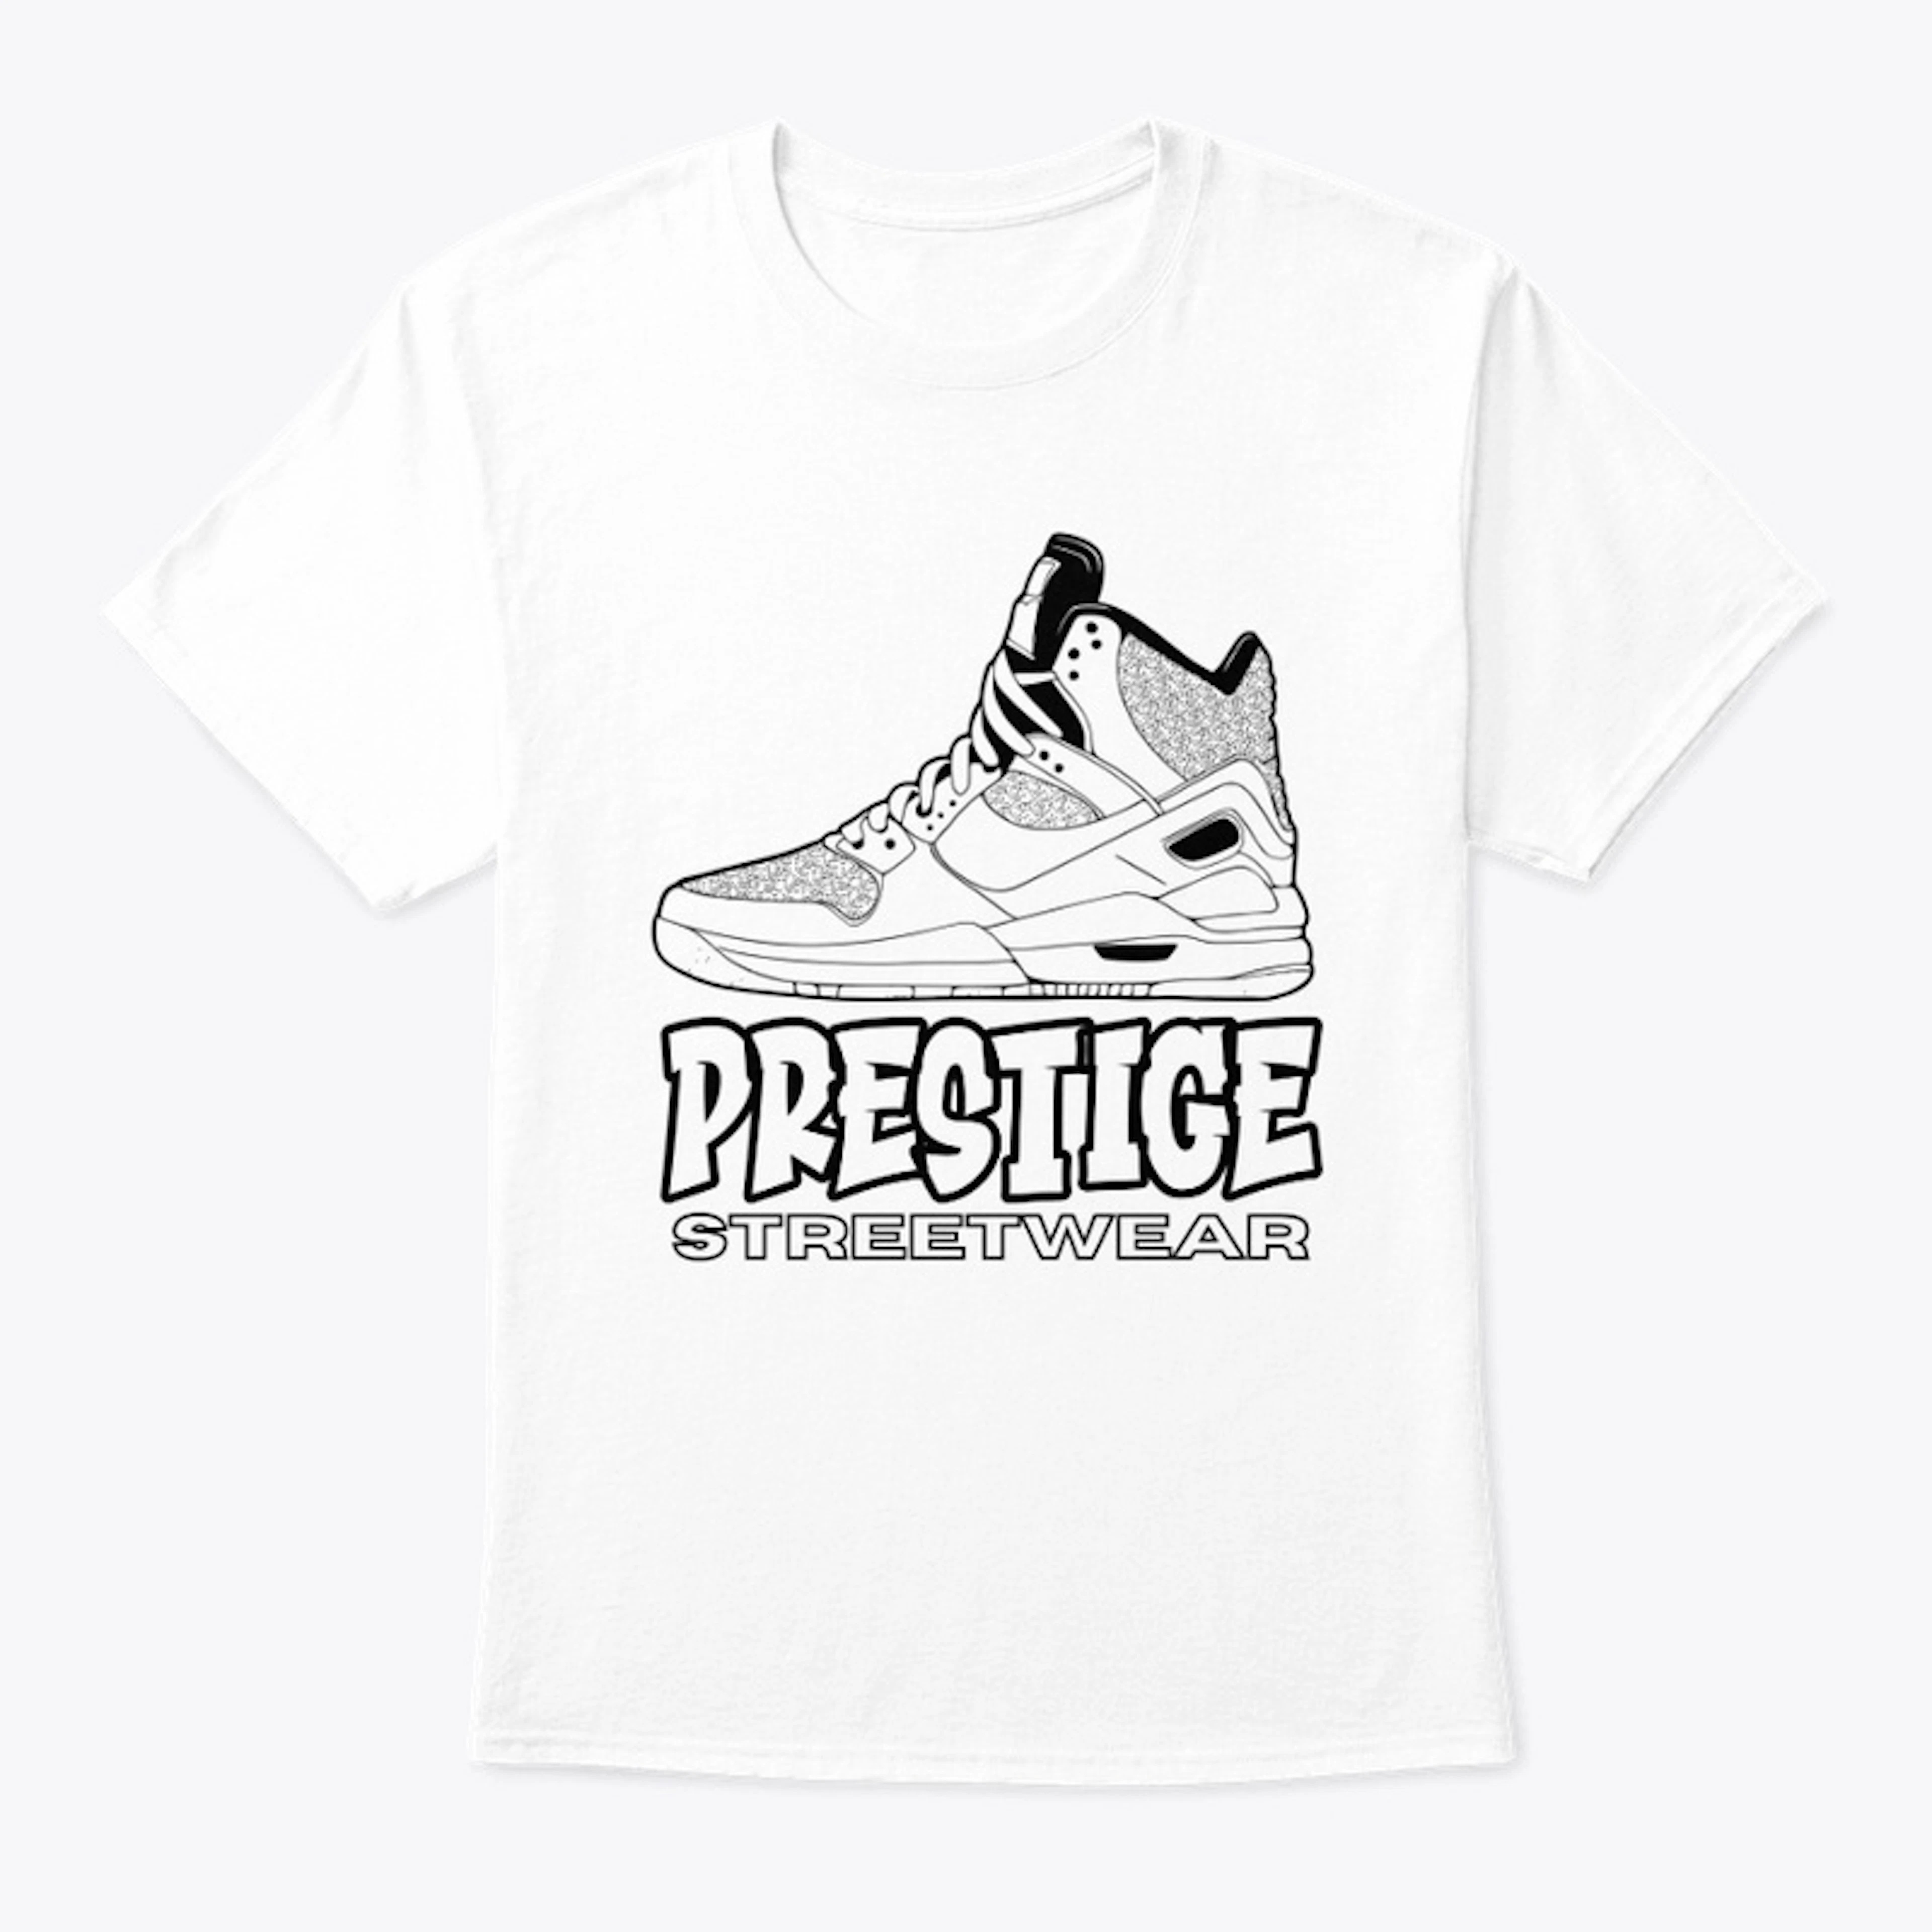 Black/White Street Basketball T-shirt